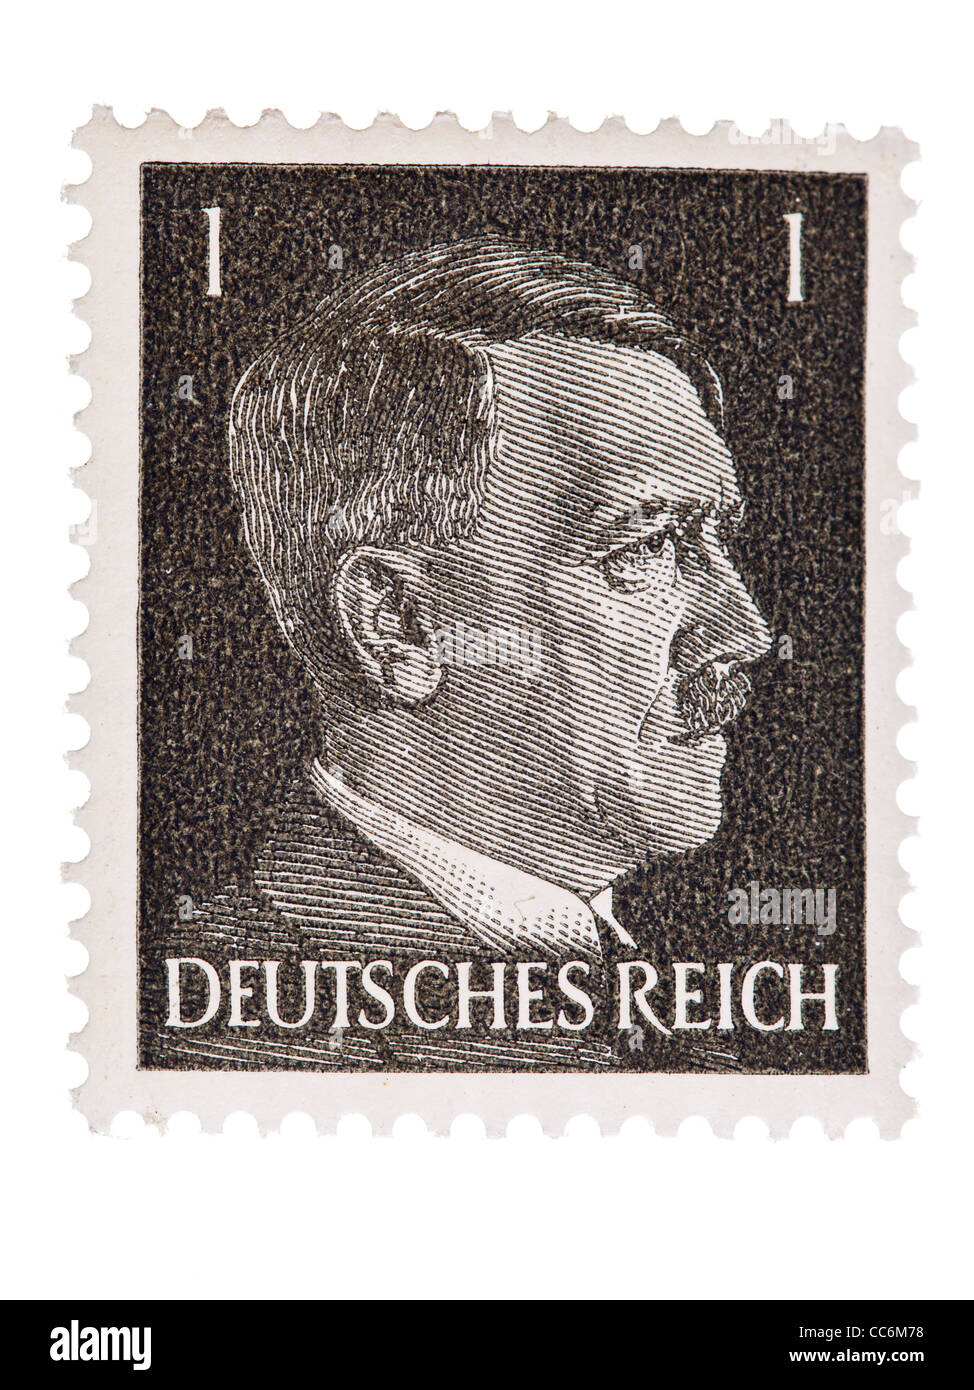 Postage stamp: German Reich, Adolf Hitler, 1941/ 1944, 1 pfennig, mint  condition Stock Photo - Alamy